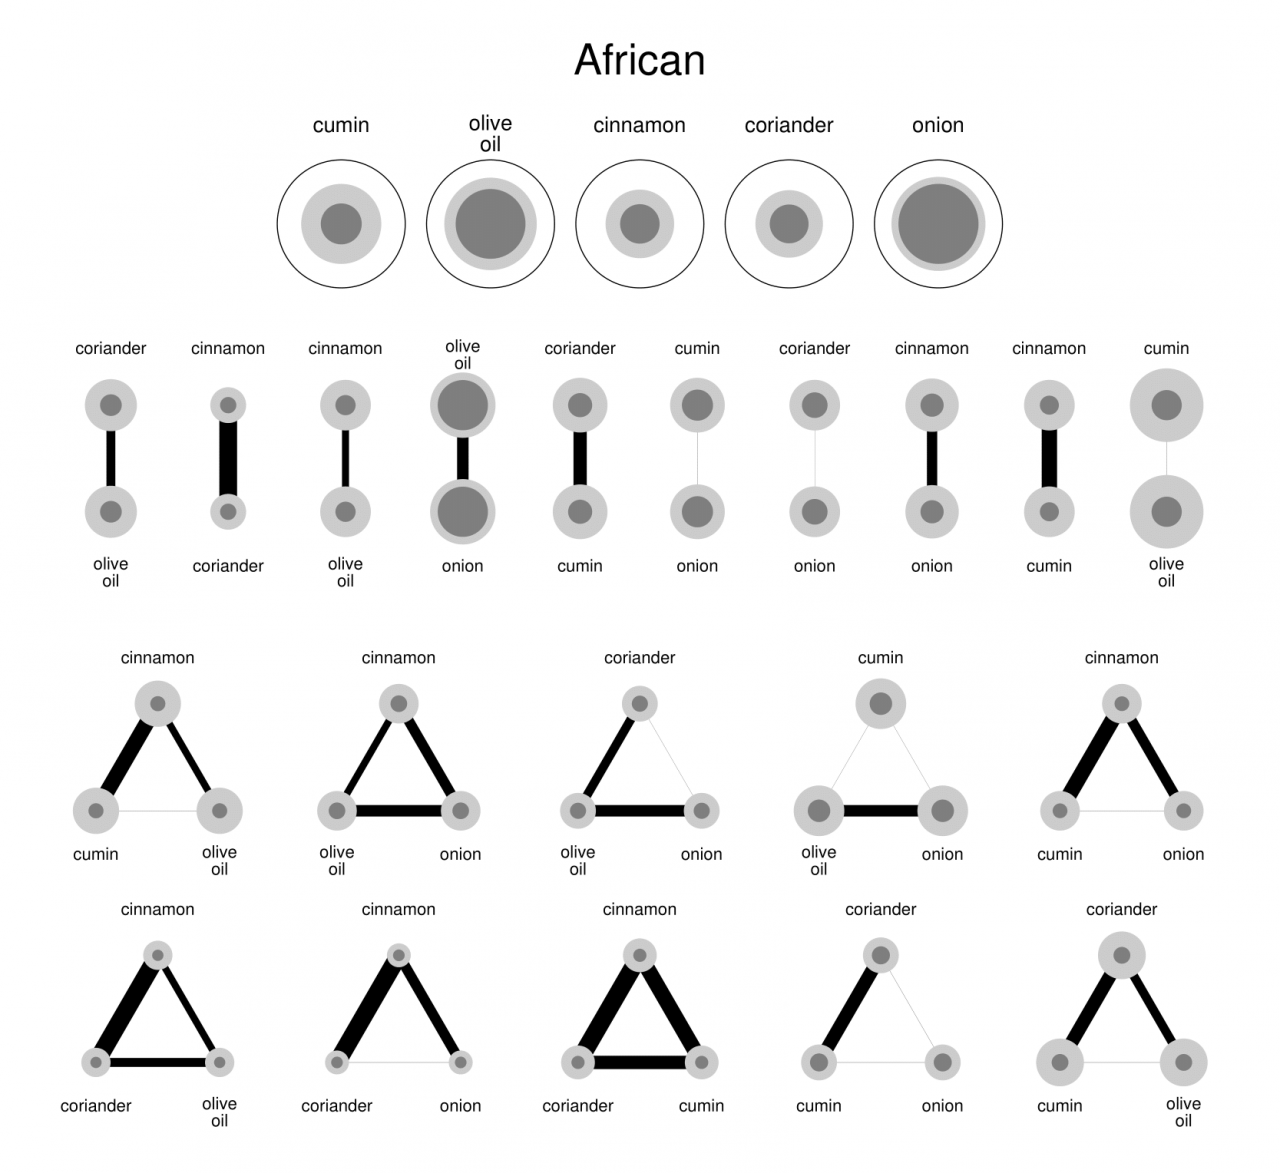 Schwarz-weiß Grafiken von Zutatenkombinationen in der afrikanischen Küche